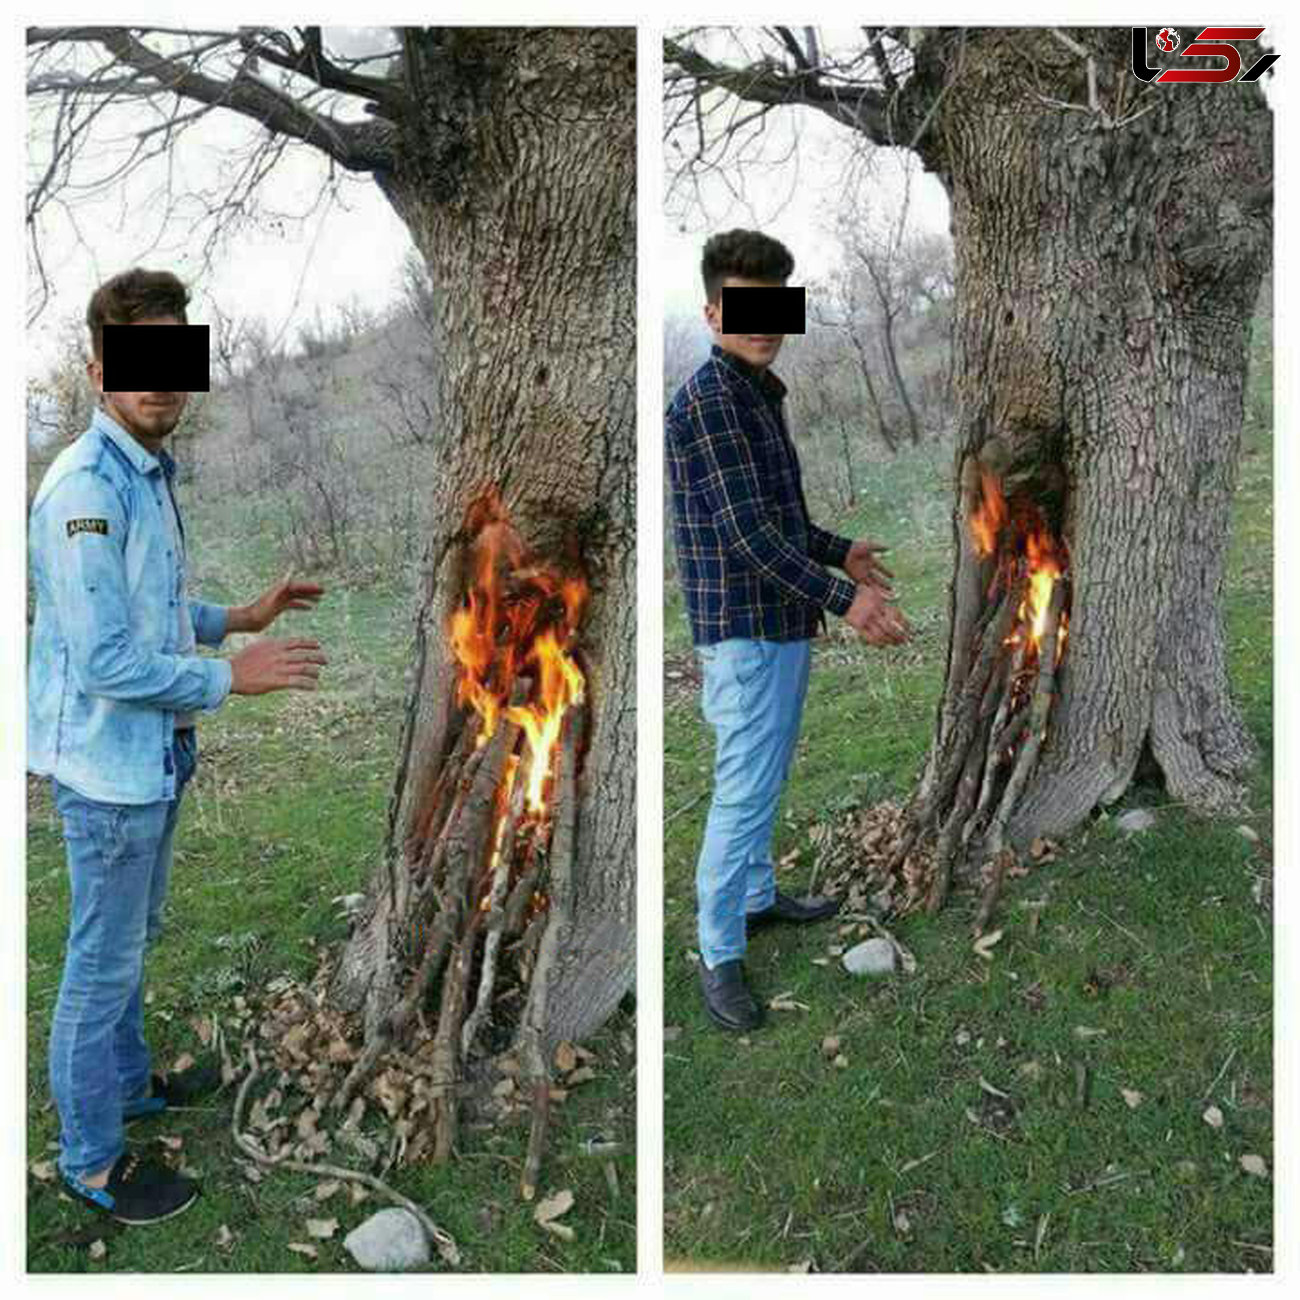 زشت ترین عکس یادگاری 2 جوان در جنگل مازندران در روز سیزده بدر+تصاویر